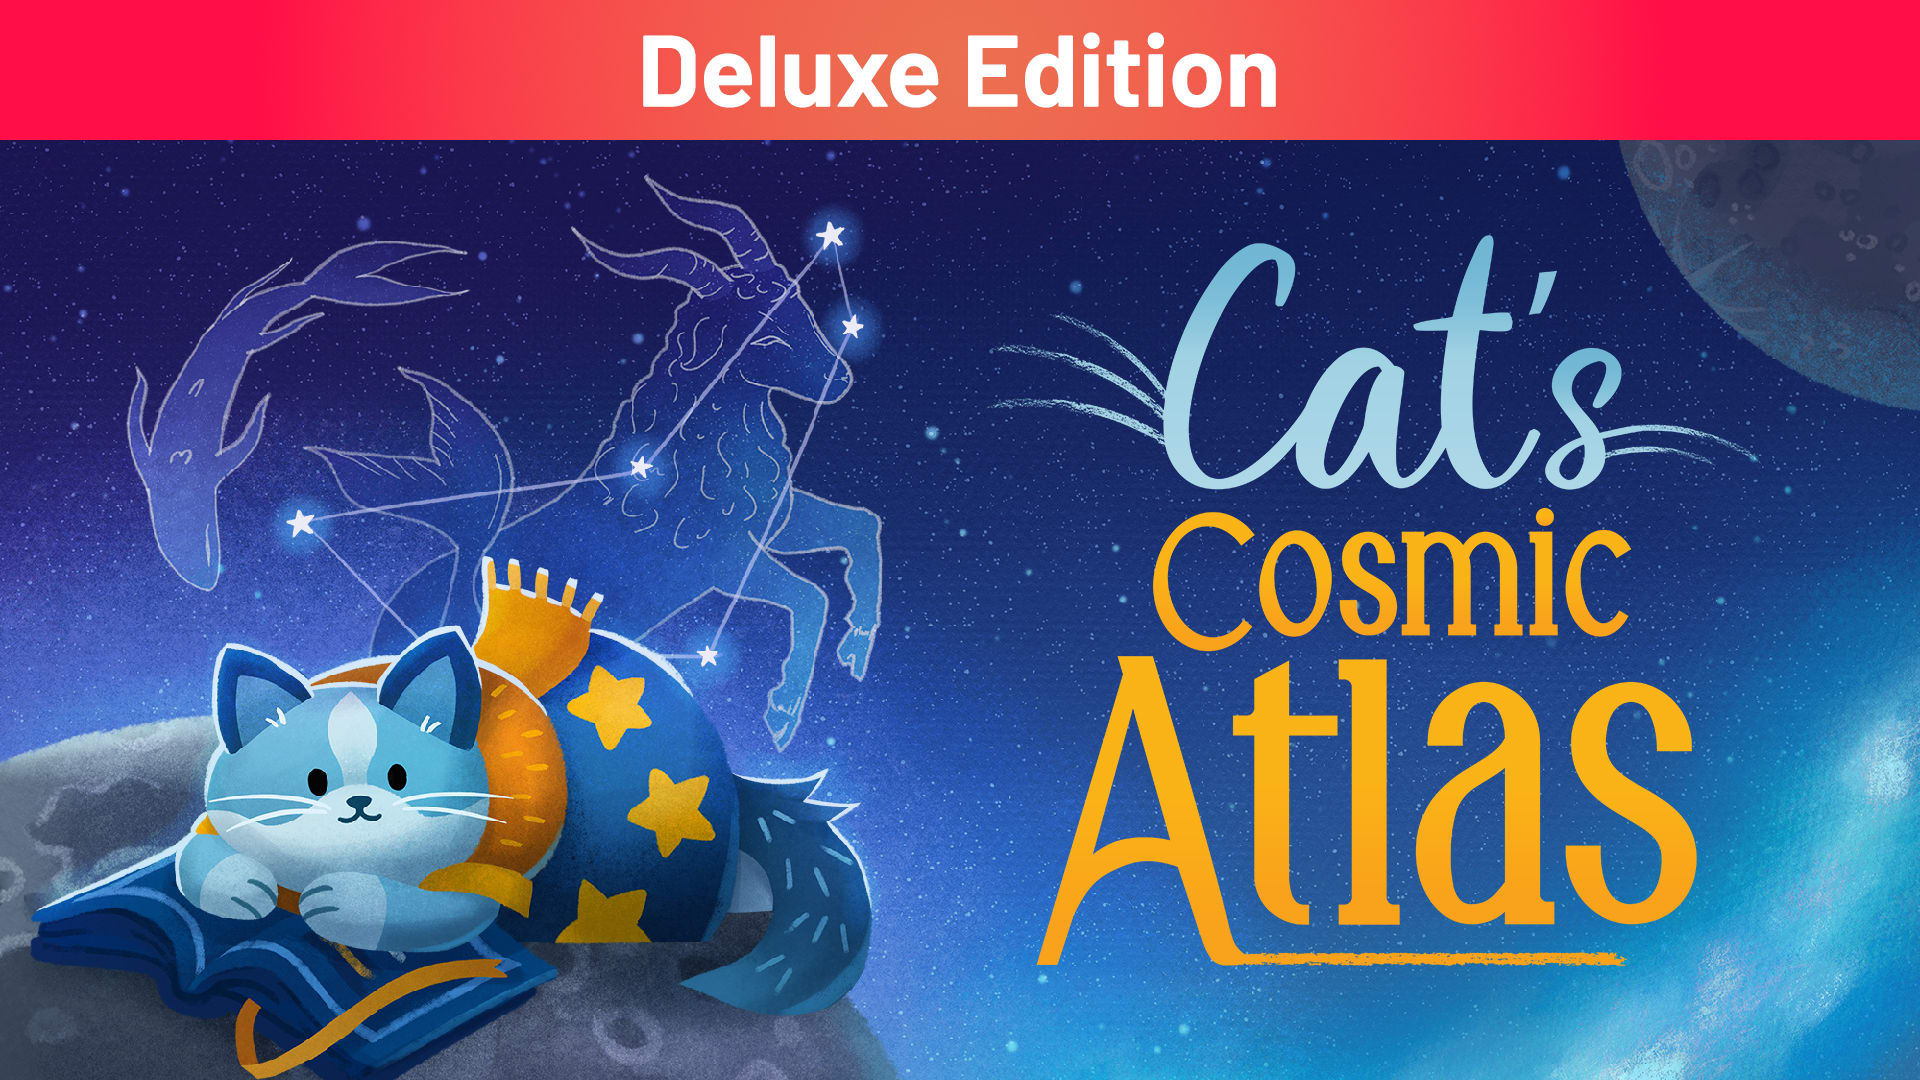 Cat's Cosmic Atlas Deluxe Edition